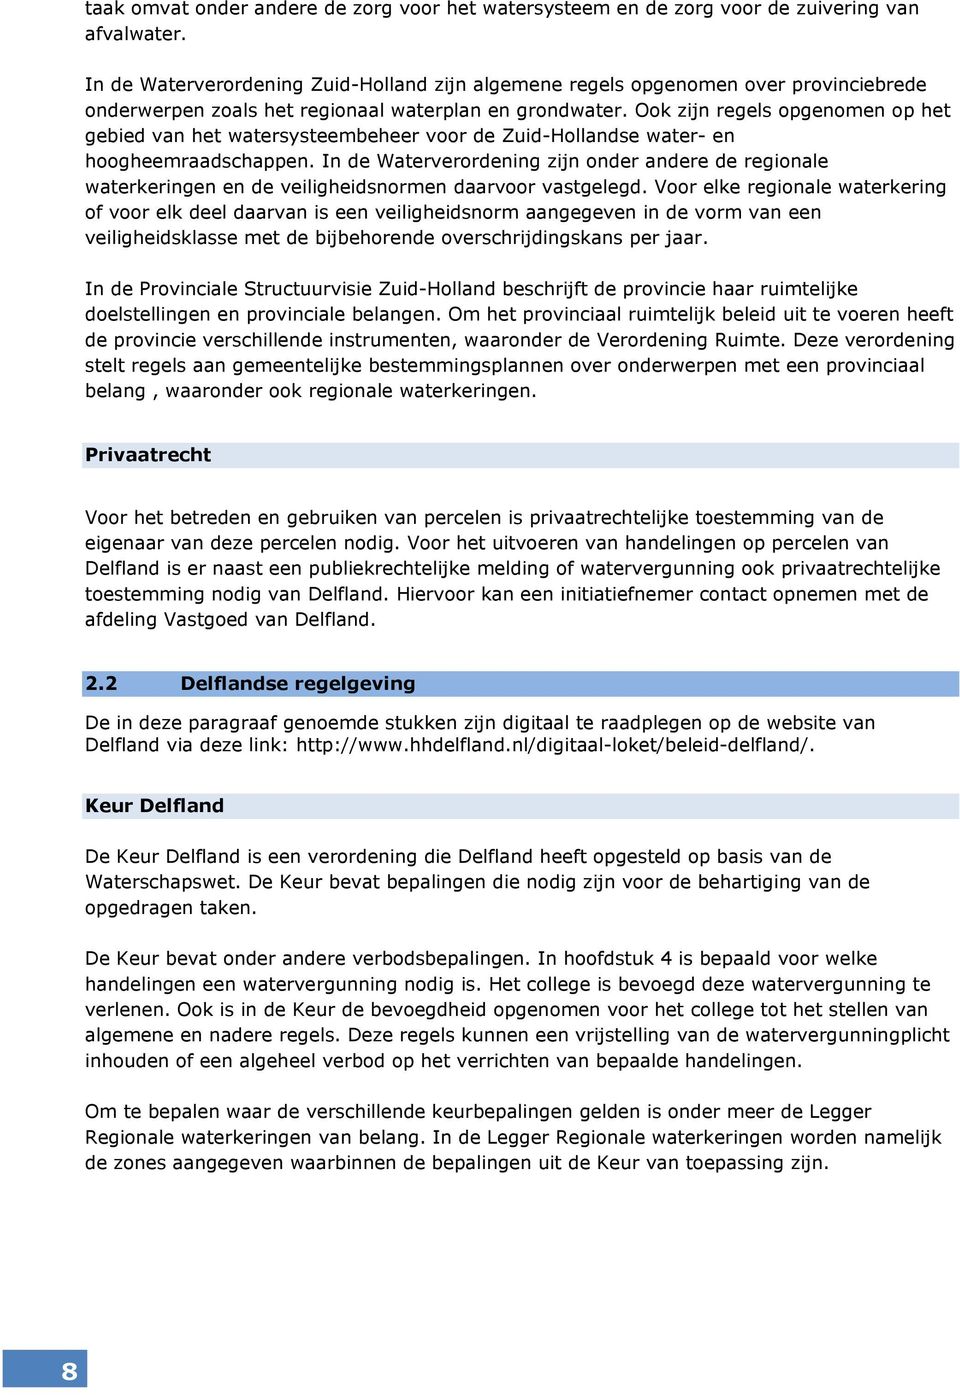 Ook zijn regels opgenomen op het gebied van het watersysteembeheer voor de Zuid-Hollandse water- en hoogheemraadschappen.